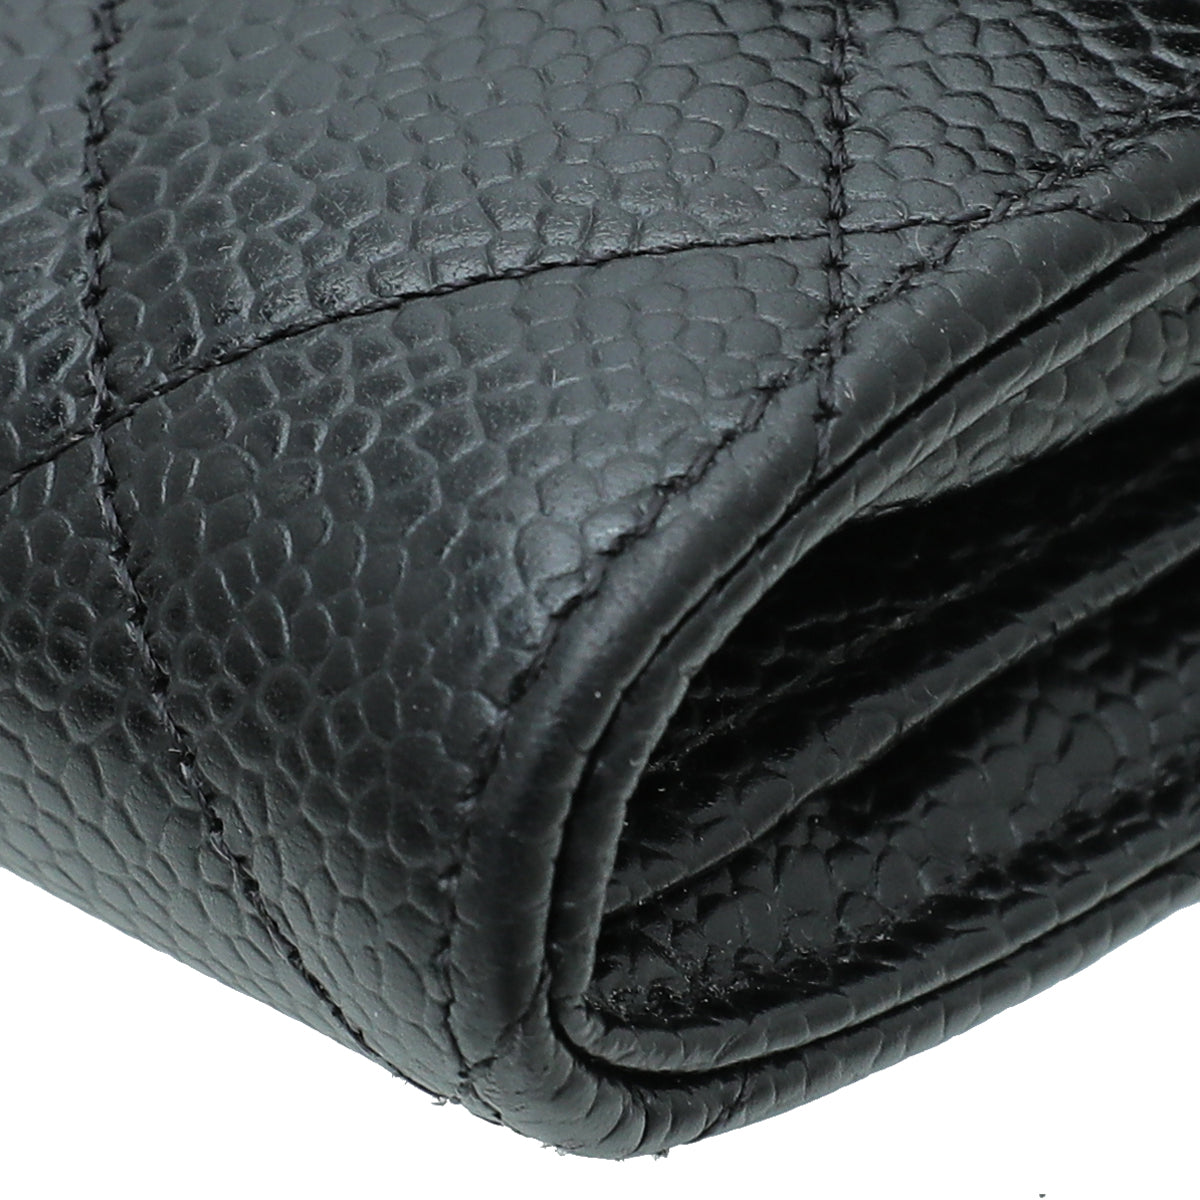 Chanel Black L-Gusset Flap Wallet – The Closet